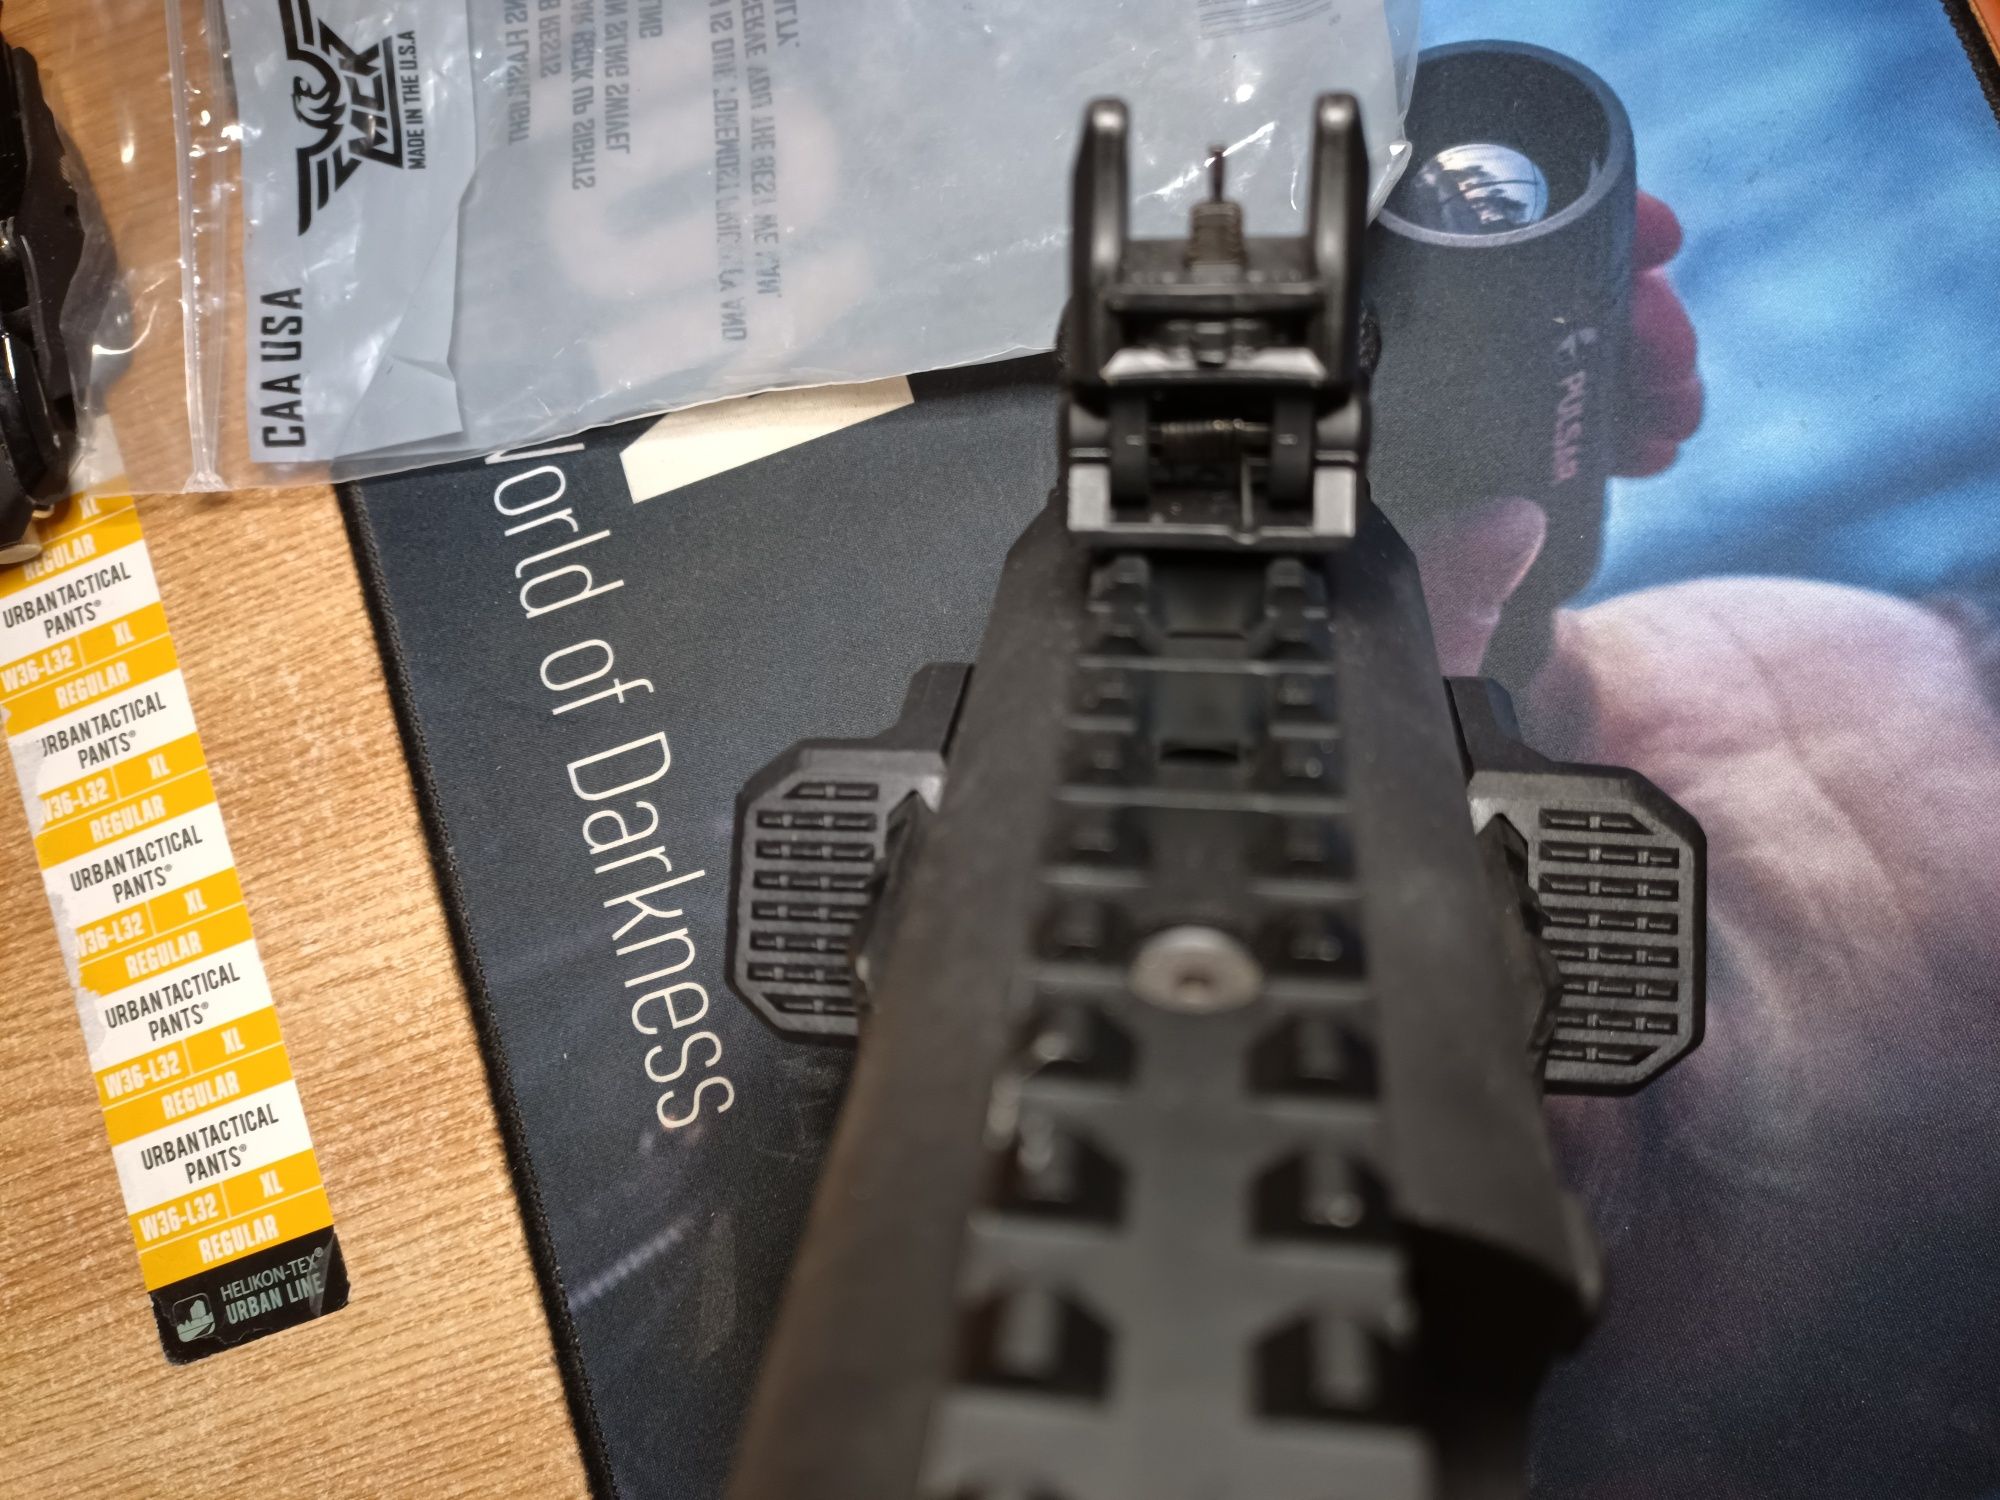 Roni Kit Glock și CZ P10 C-F-S